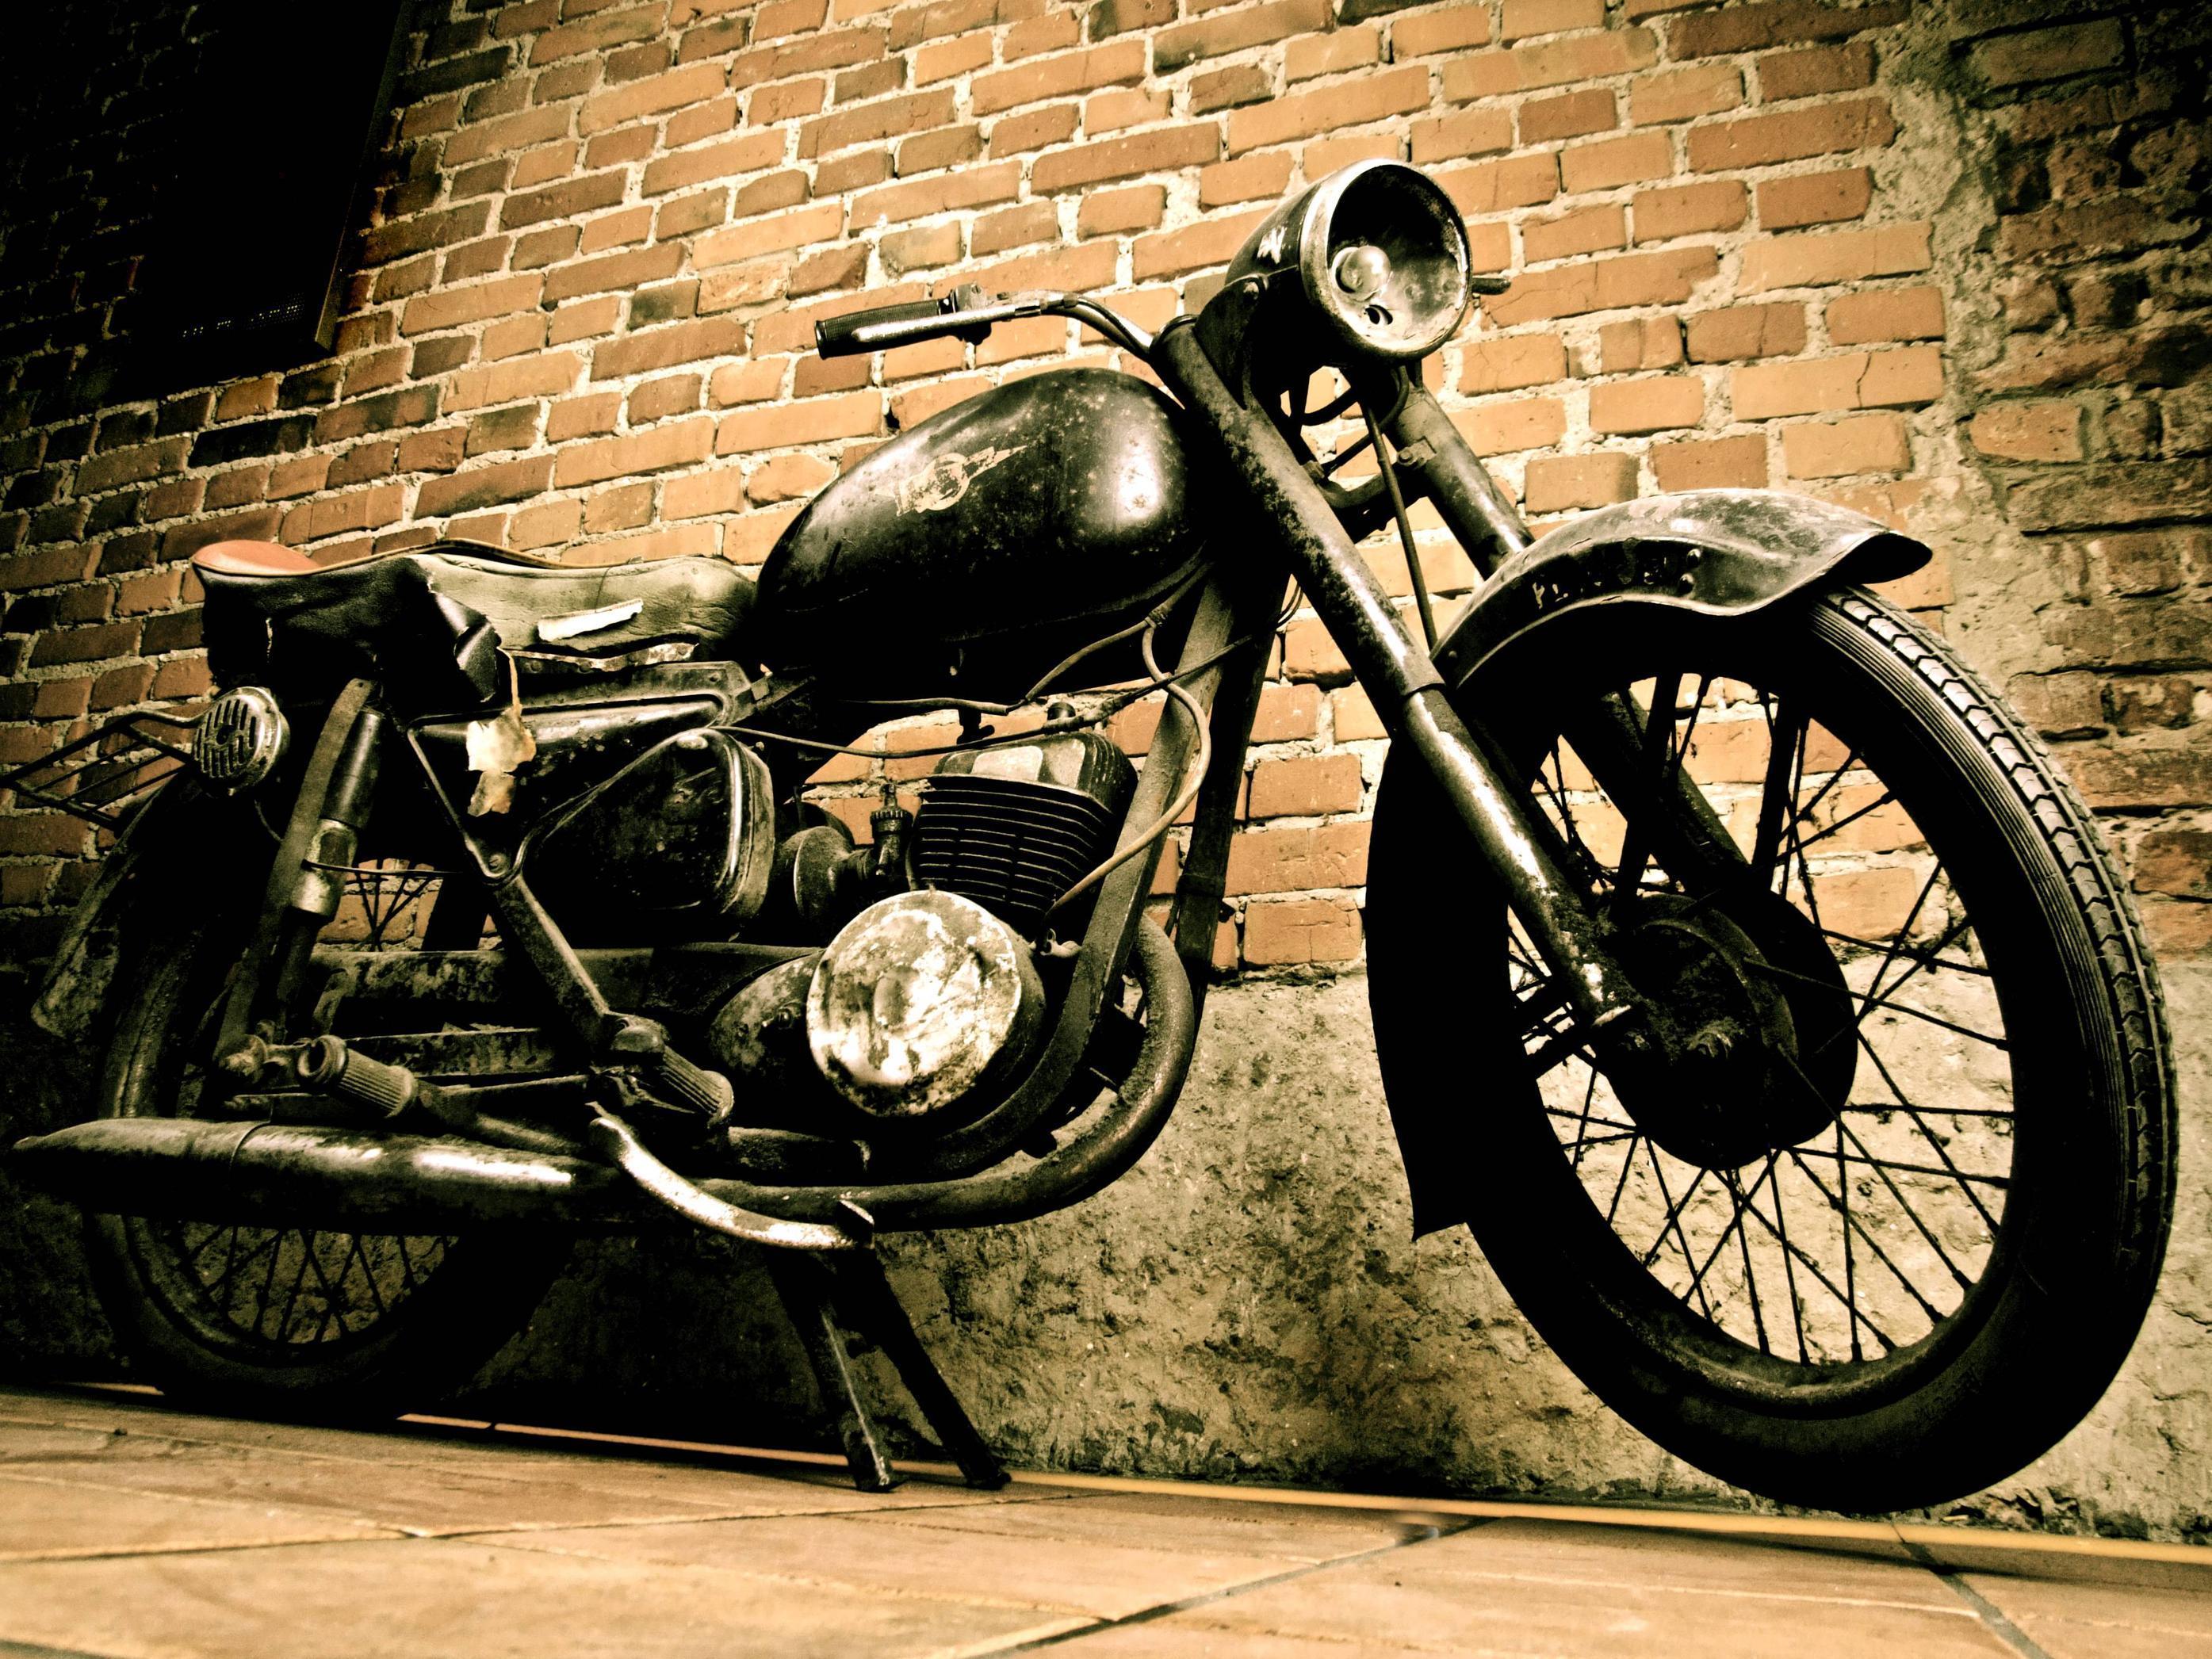 Best Vintage Custom Motorcycle Poster Wallpaper Image